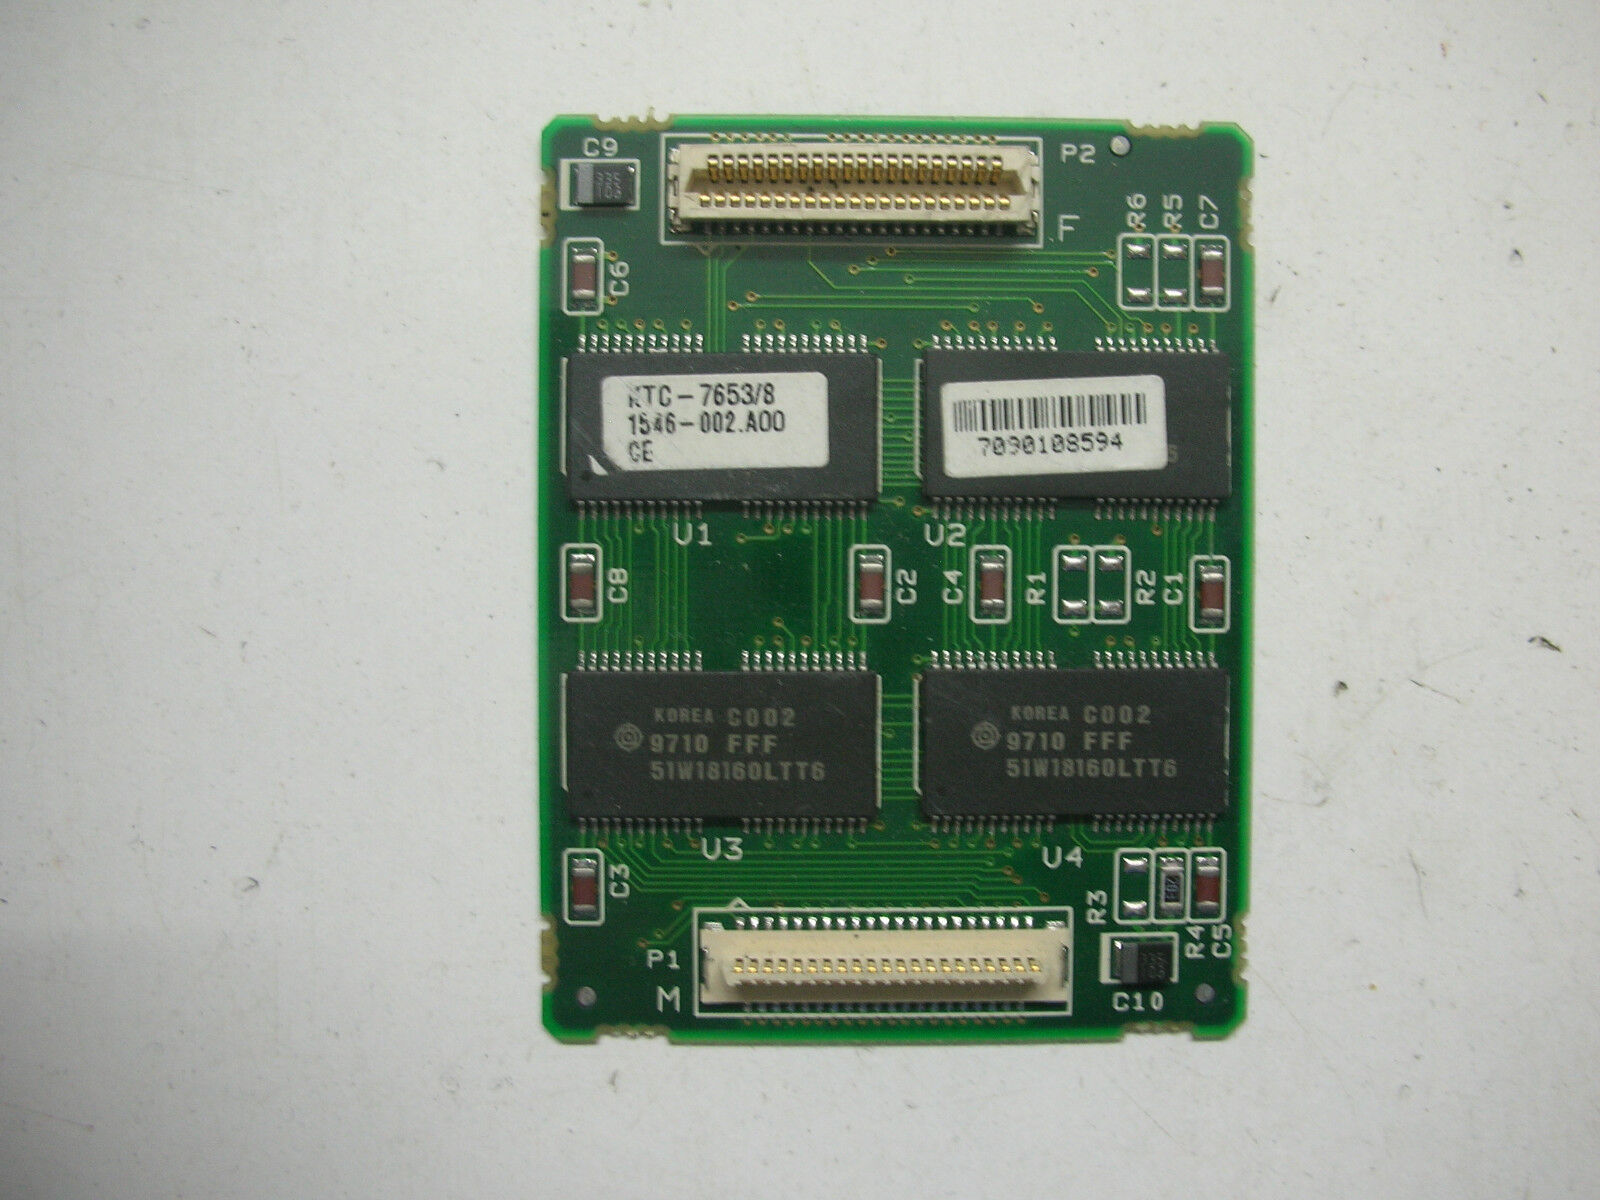 Kingston KTC-7653/8 Laptop Memory Module